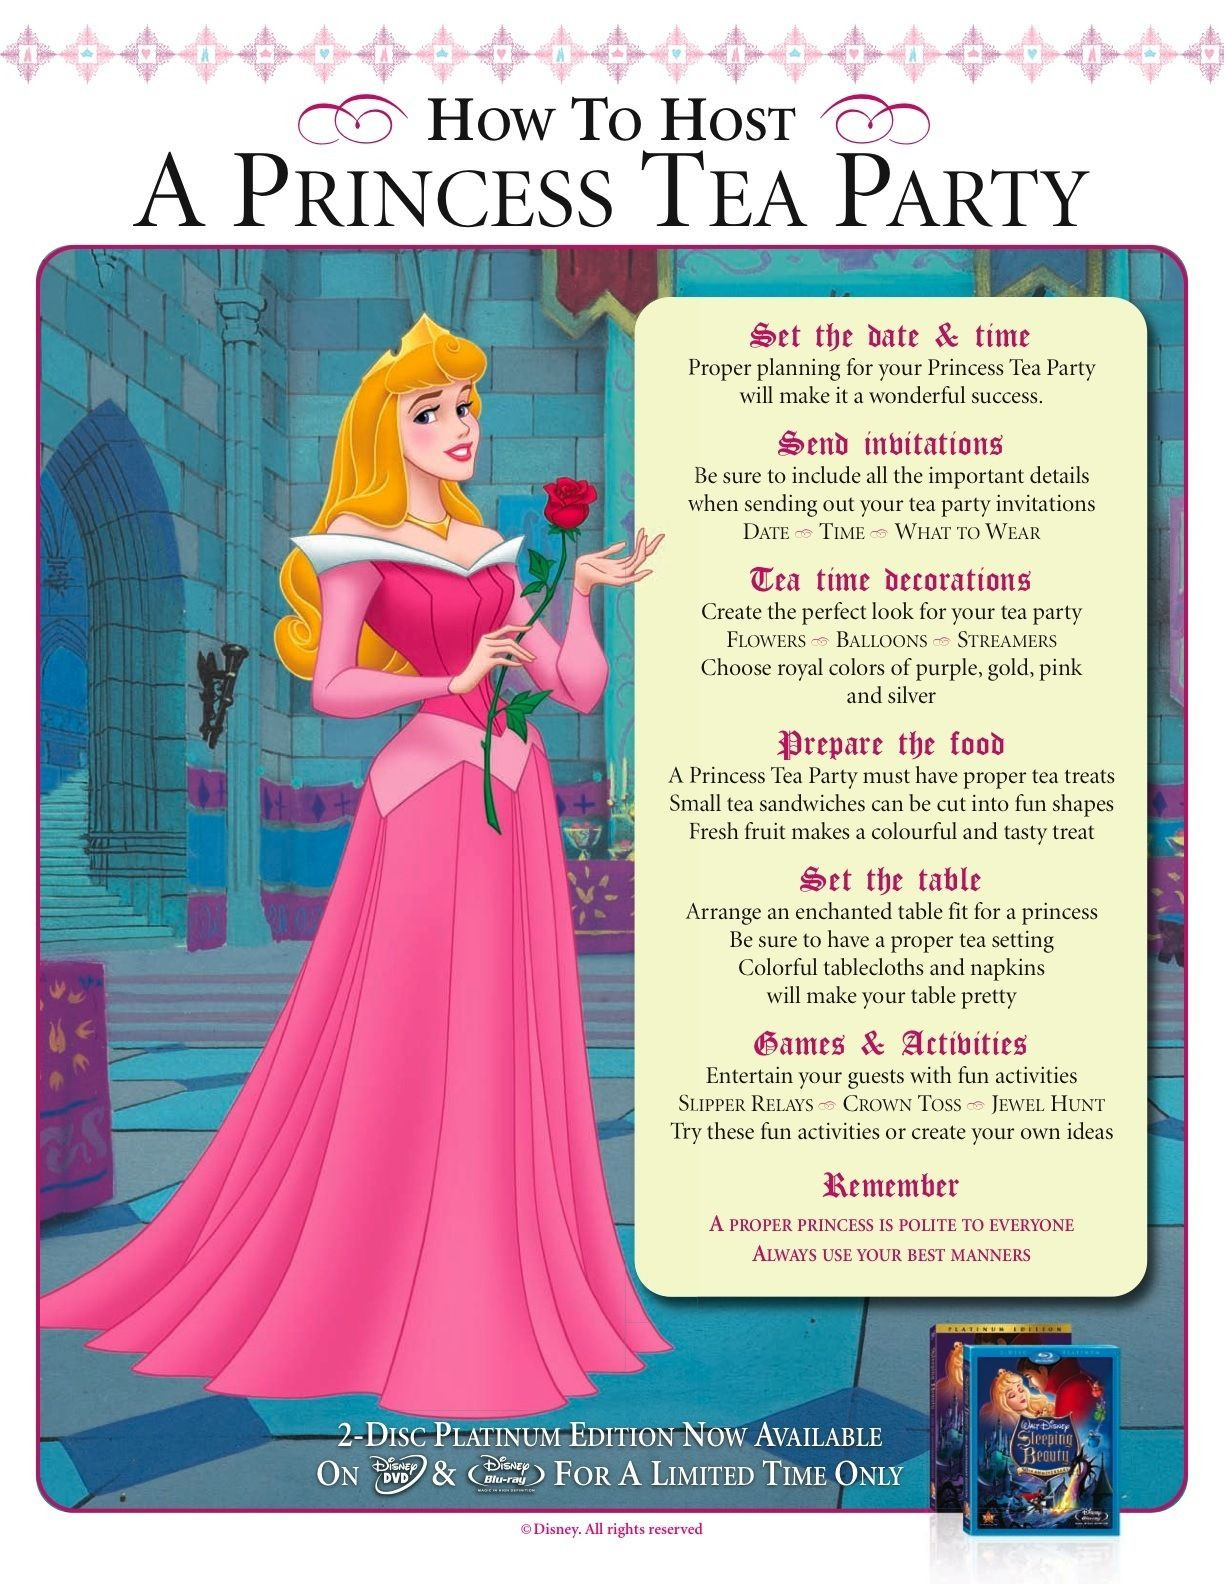 Disney Princess Tea Party Ideas
 Princess Aurora s tips for hosting a princess tea party